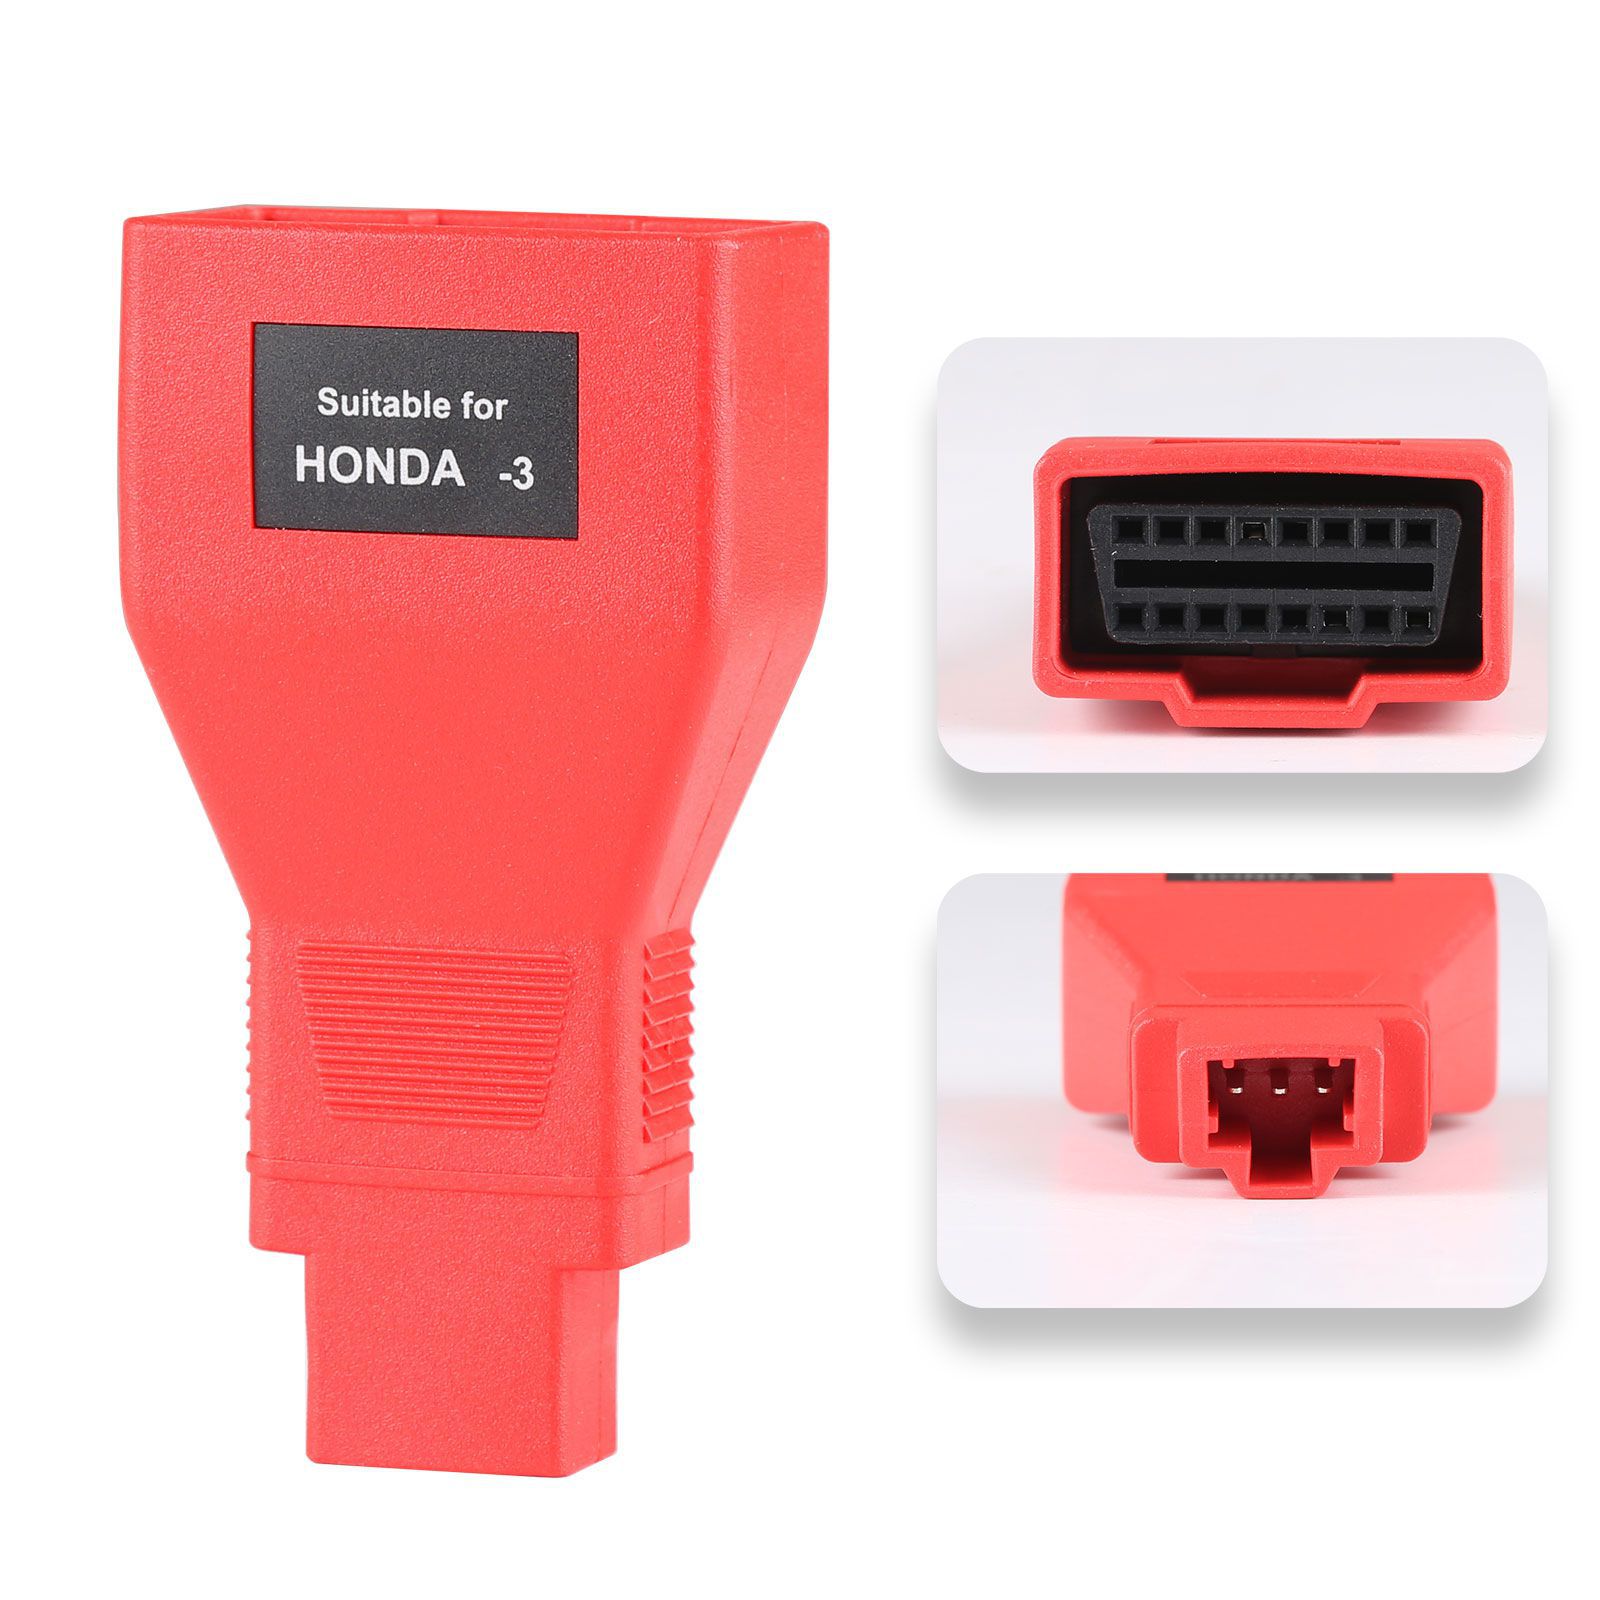 Autel Full Set OBDII Kabel und Stecker Kit für DS808/MK808/MP808 (nur Kabel und Stecker)